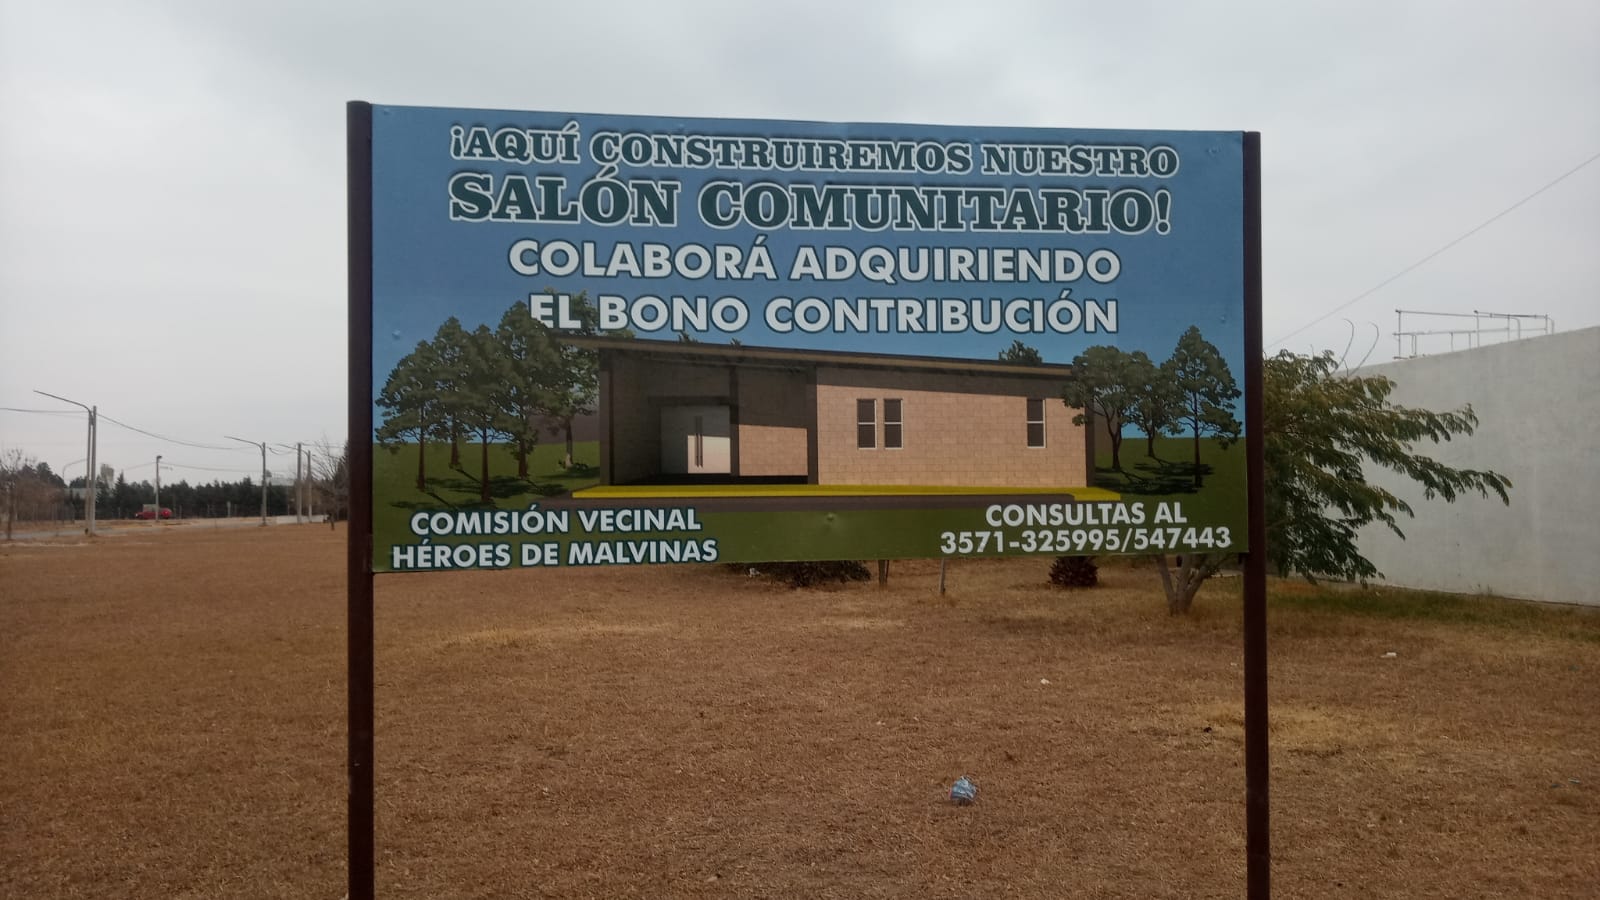 BARRIO HÉROES DE MALVINAS LANZA UN BONO CONTRIBUCIÓN PARA LA CONSTRUCCIÓN DE SU SALÓN